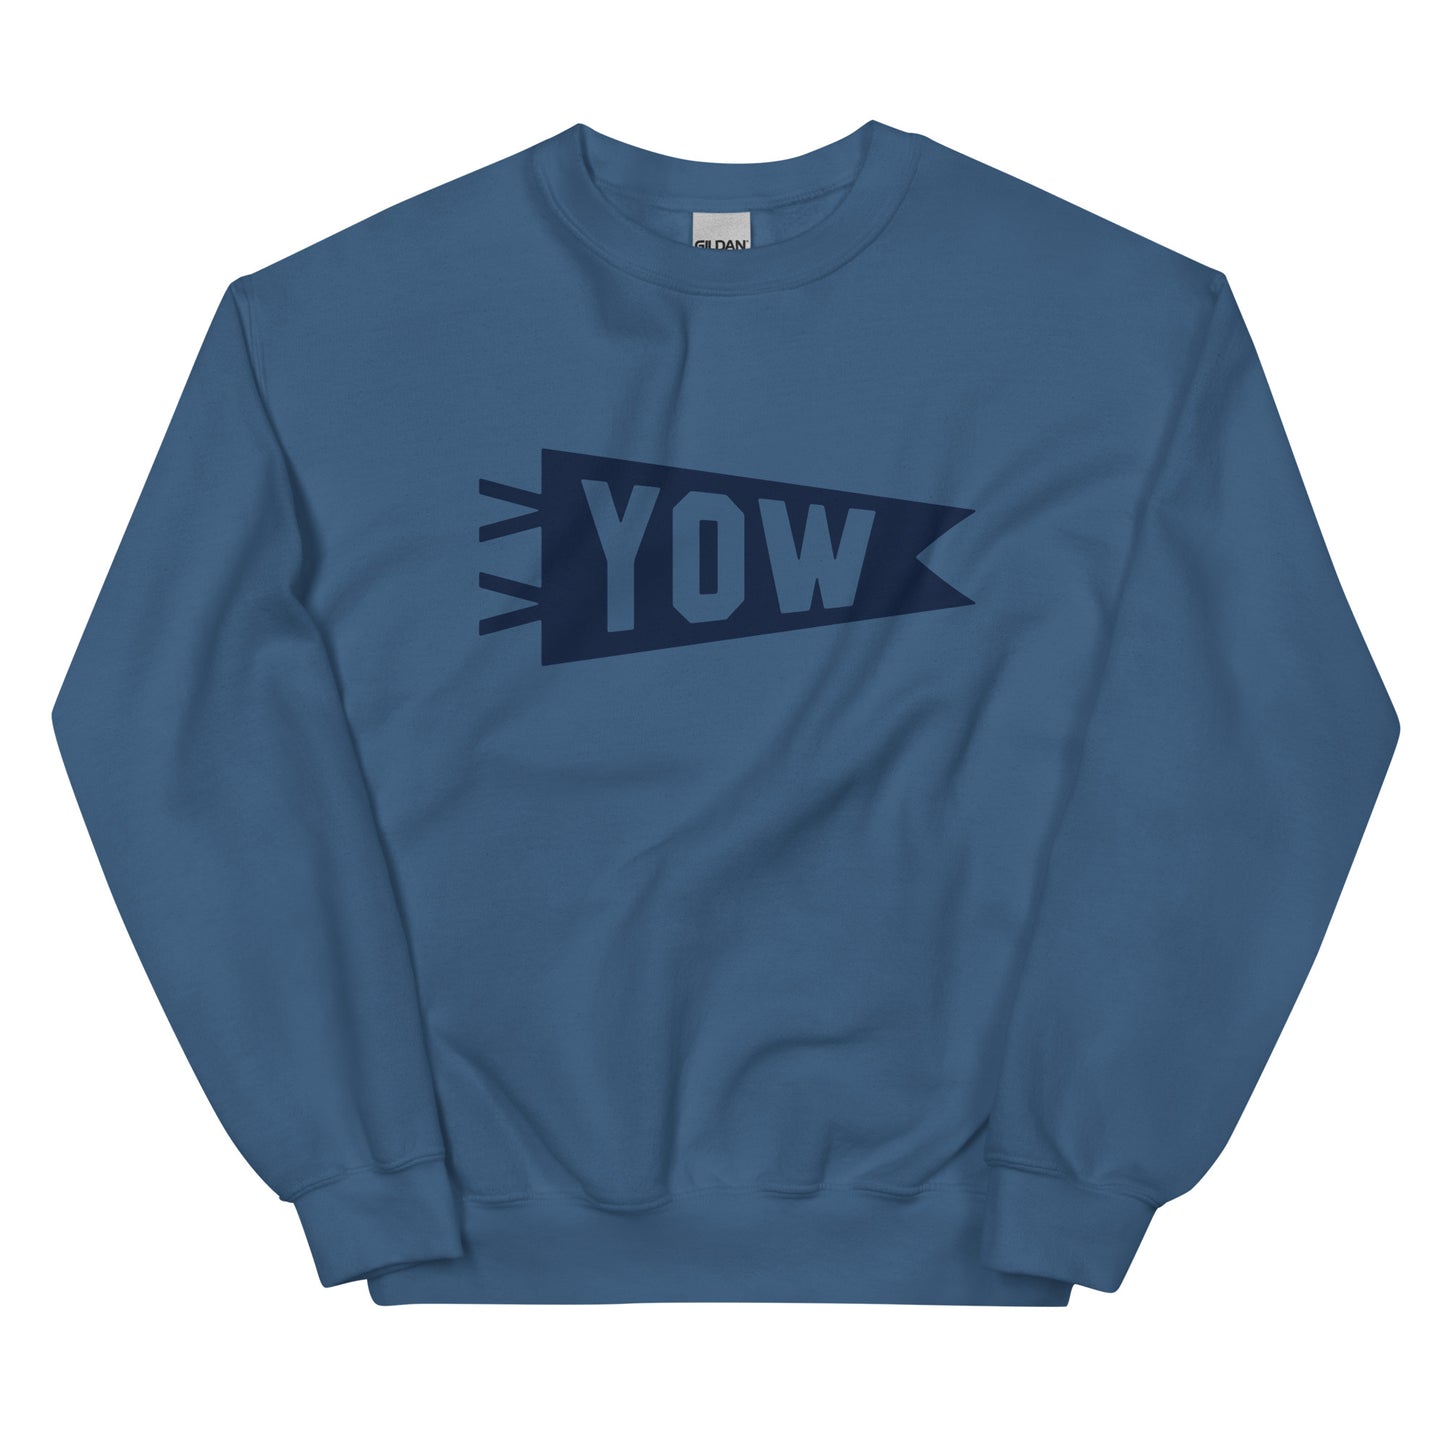 Airport Code Sweatshirt - Navy Blue Graphic • YOW Ottawa • YHM Designs - Image 01